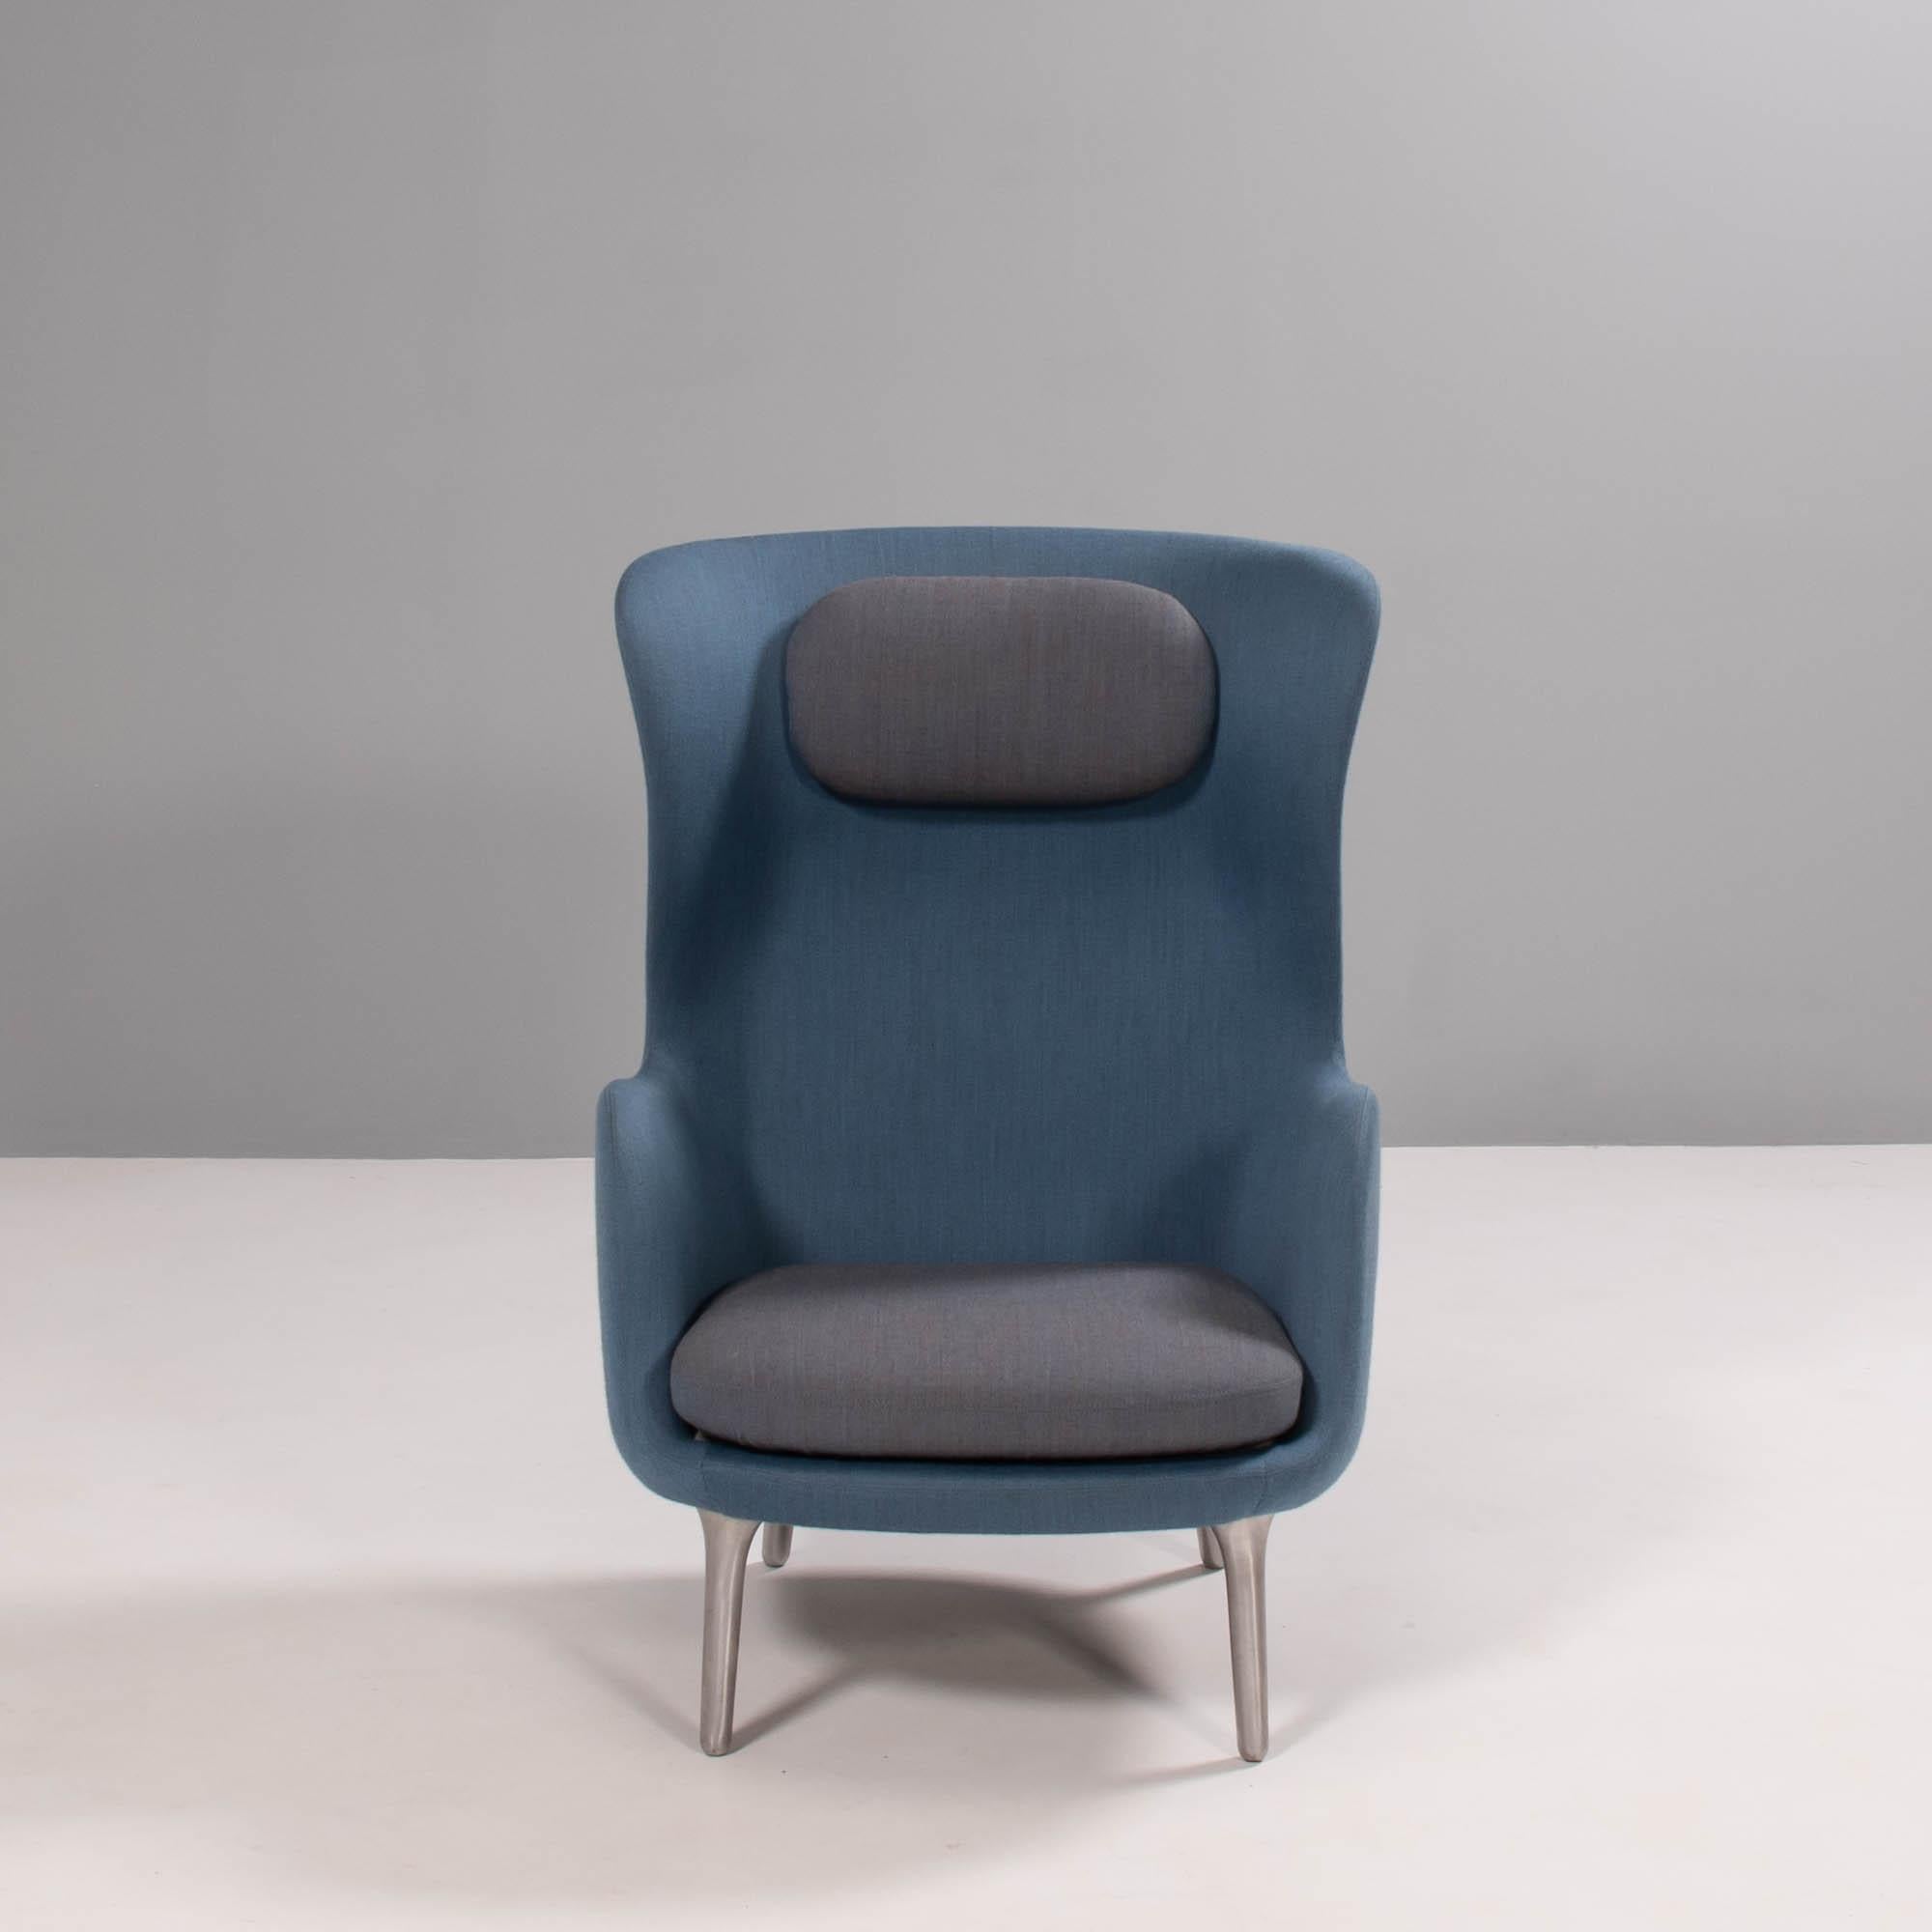 Der von Jaime Hayon für Fritz Hansen entworfene Lounge-Sessel RO ist nach dem dänischen Wort für 